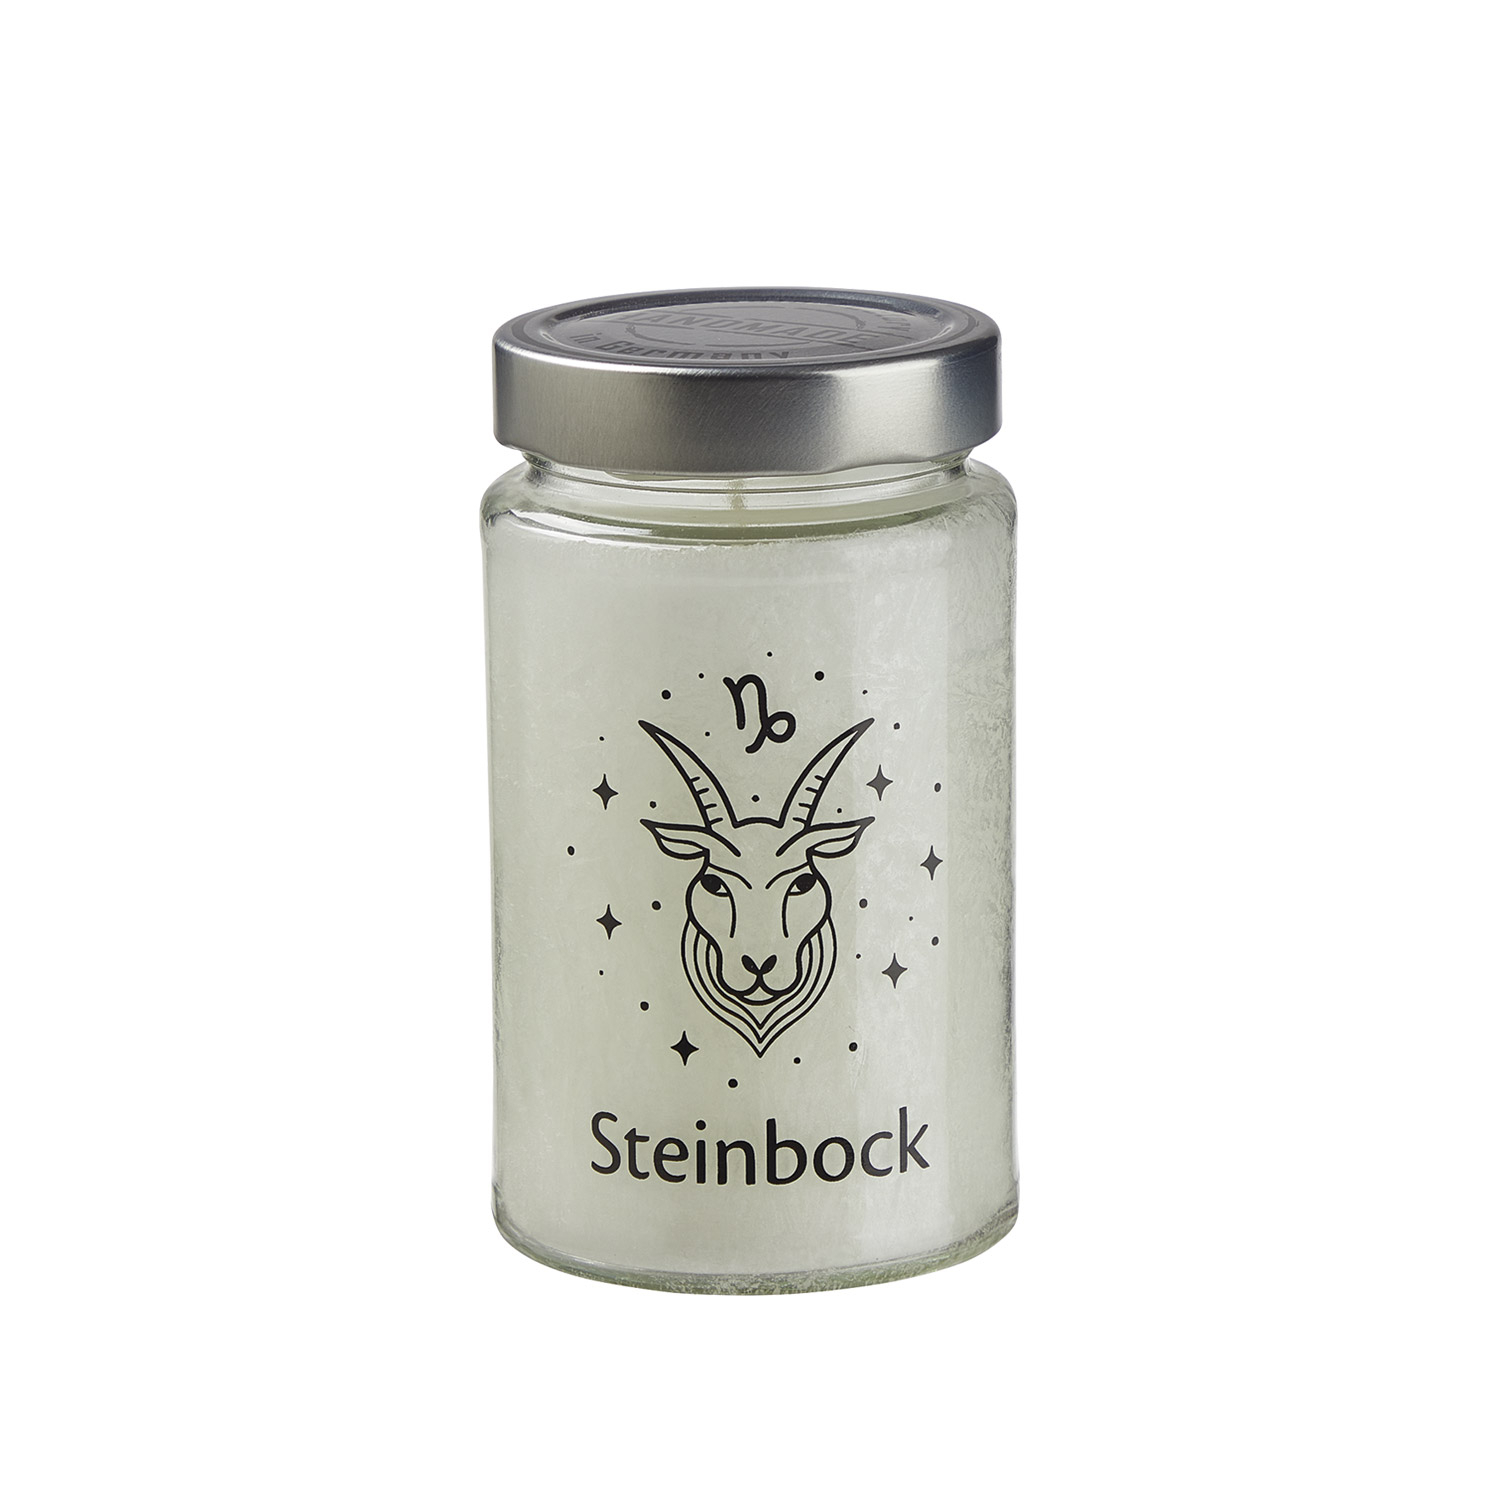 Sternzeichen-Duftkerze „Steinbock“, Produktbild 1